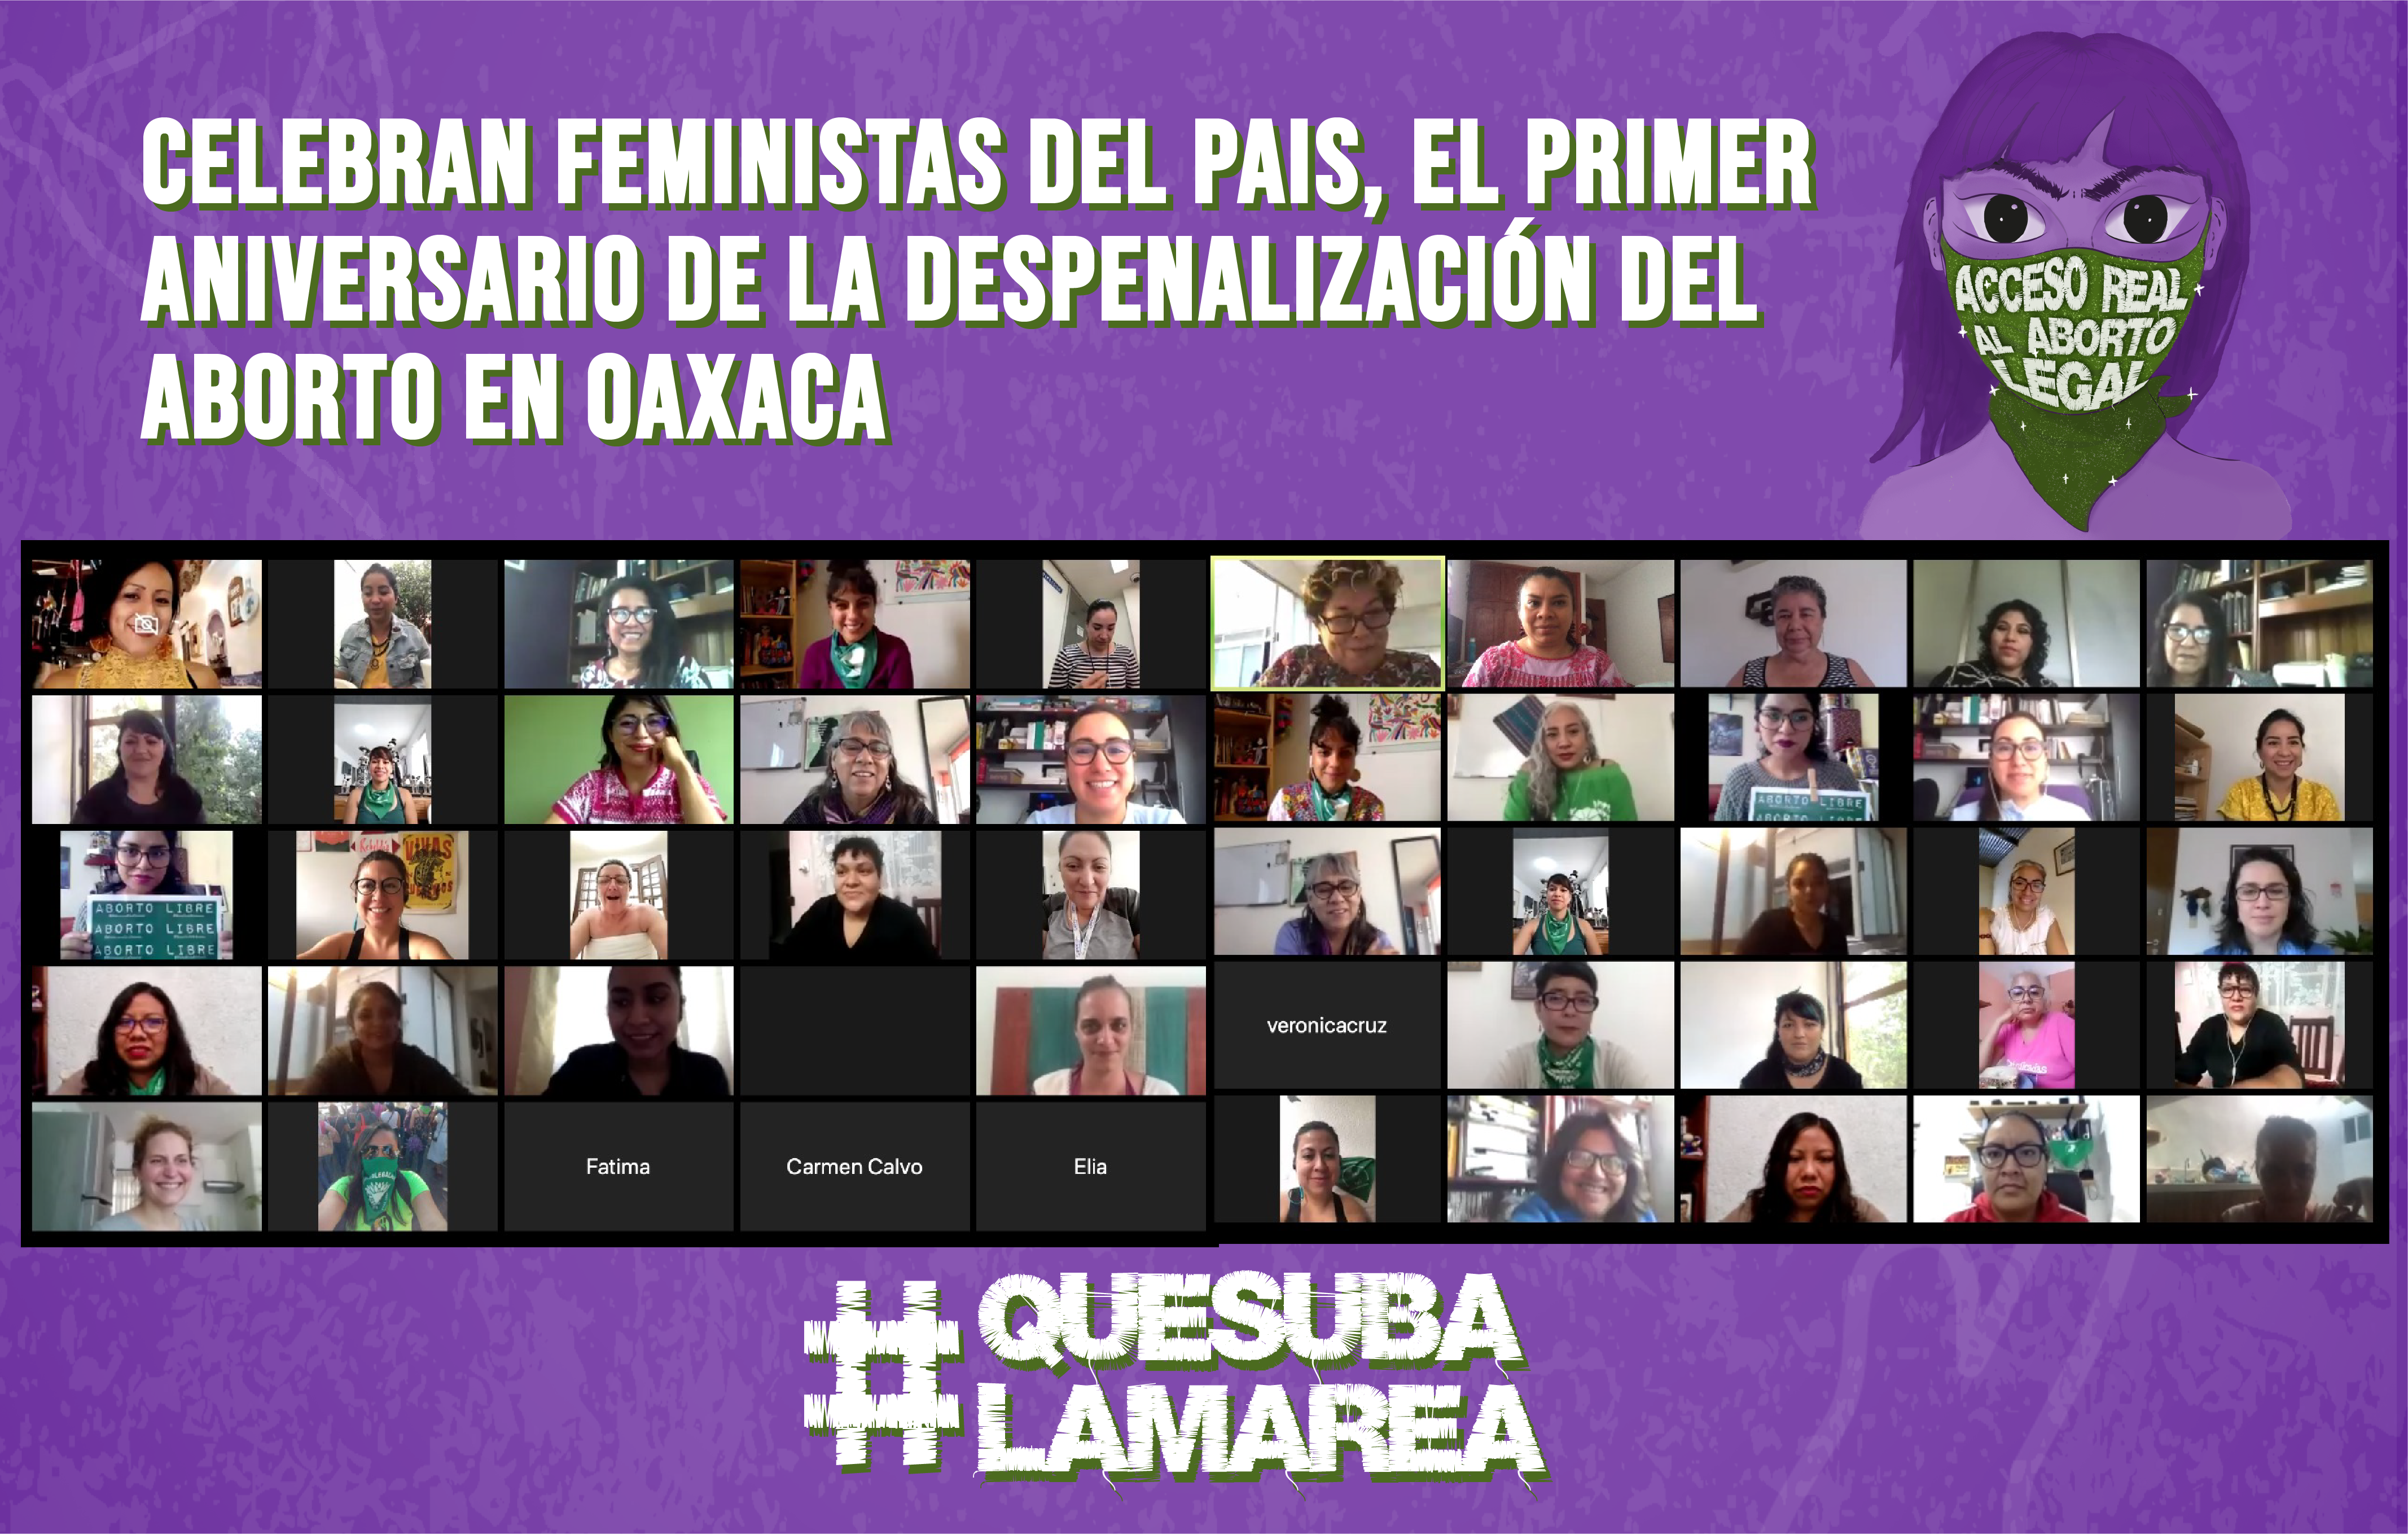 CELEBRAN FEMINISTAS DEL PAIS, EL PRIMER ANIVERSARIO DE LA DESPENALIZACIÓN DEL ABORTO EN OAXACA